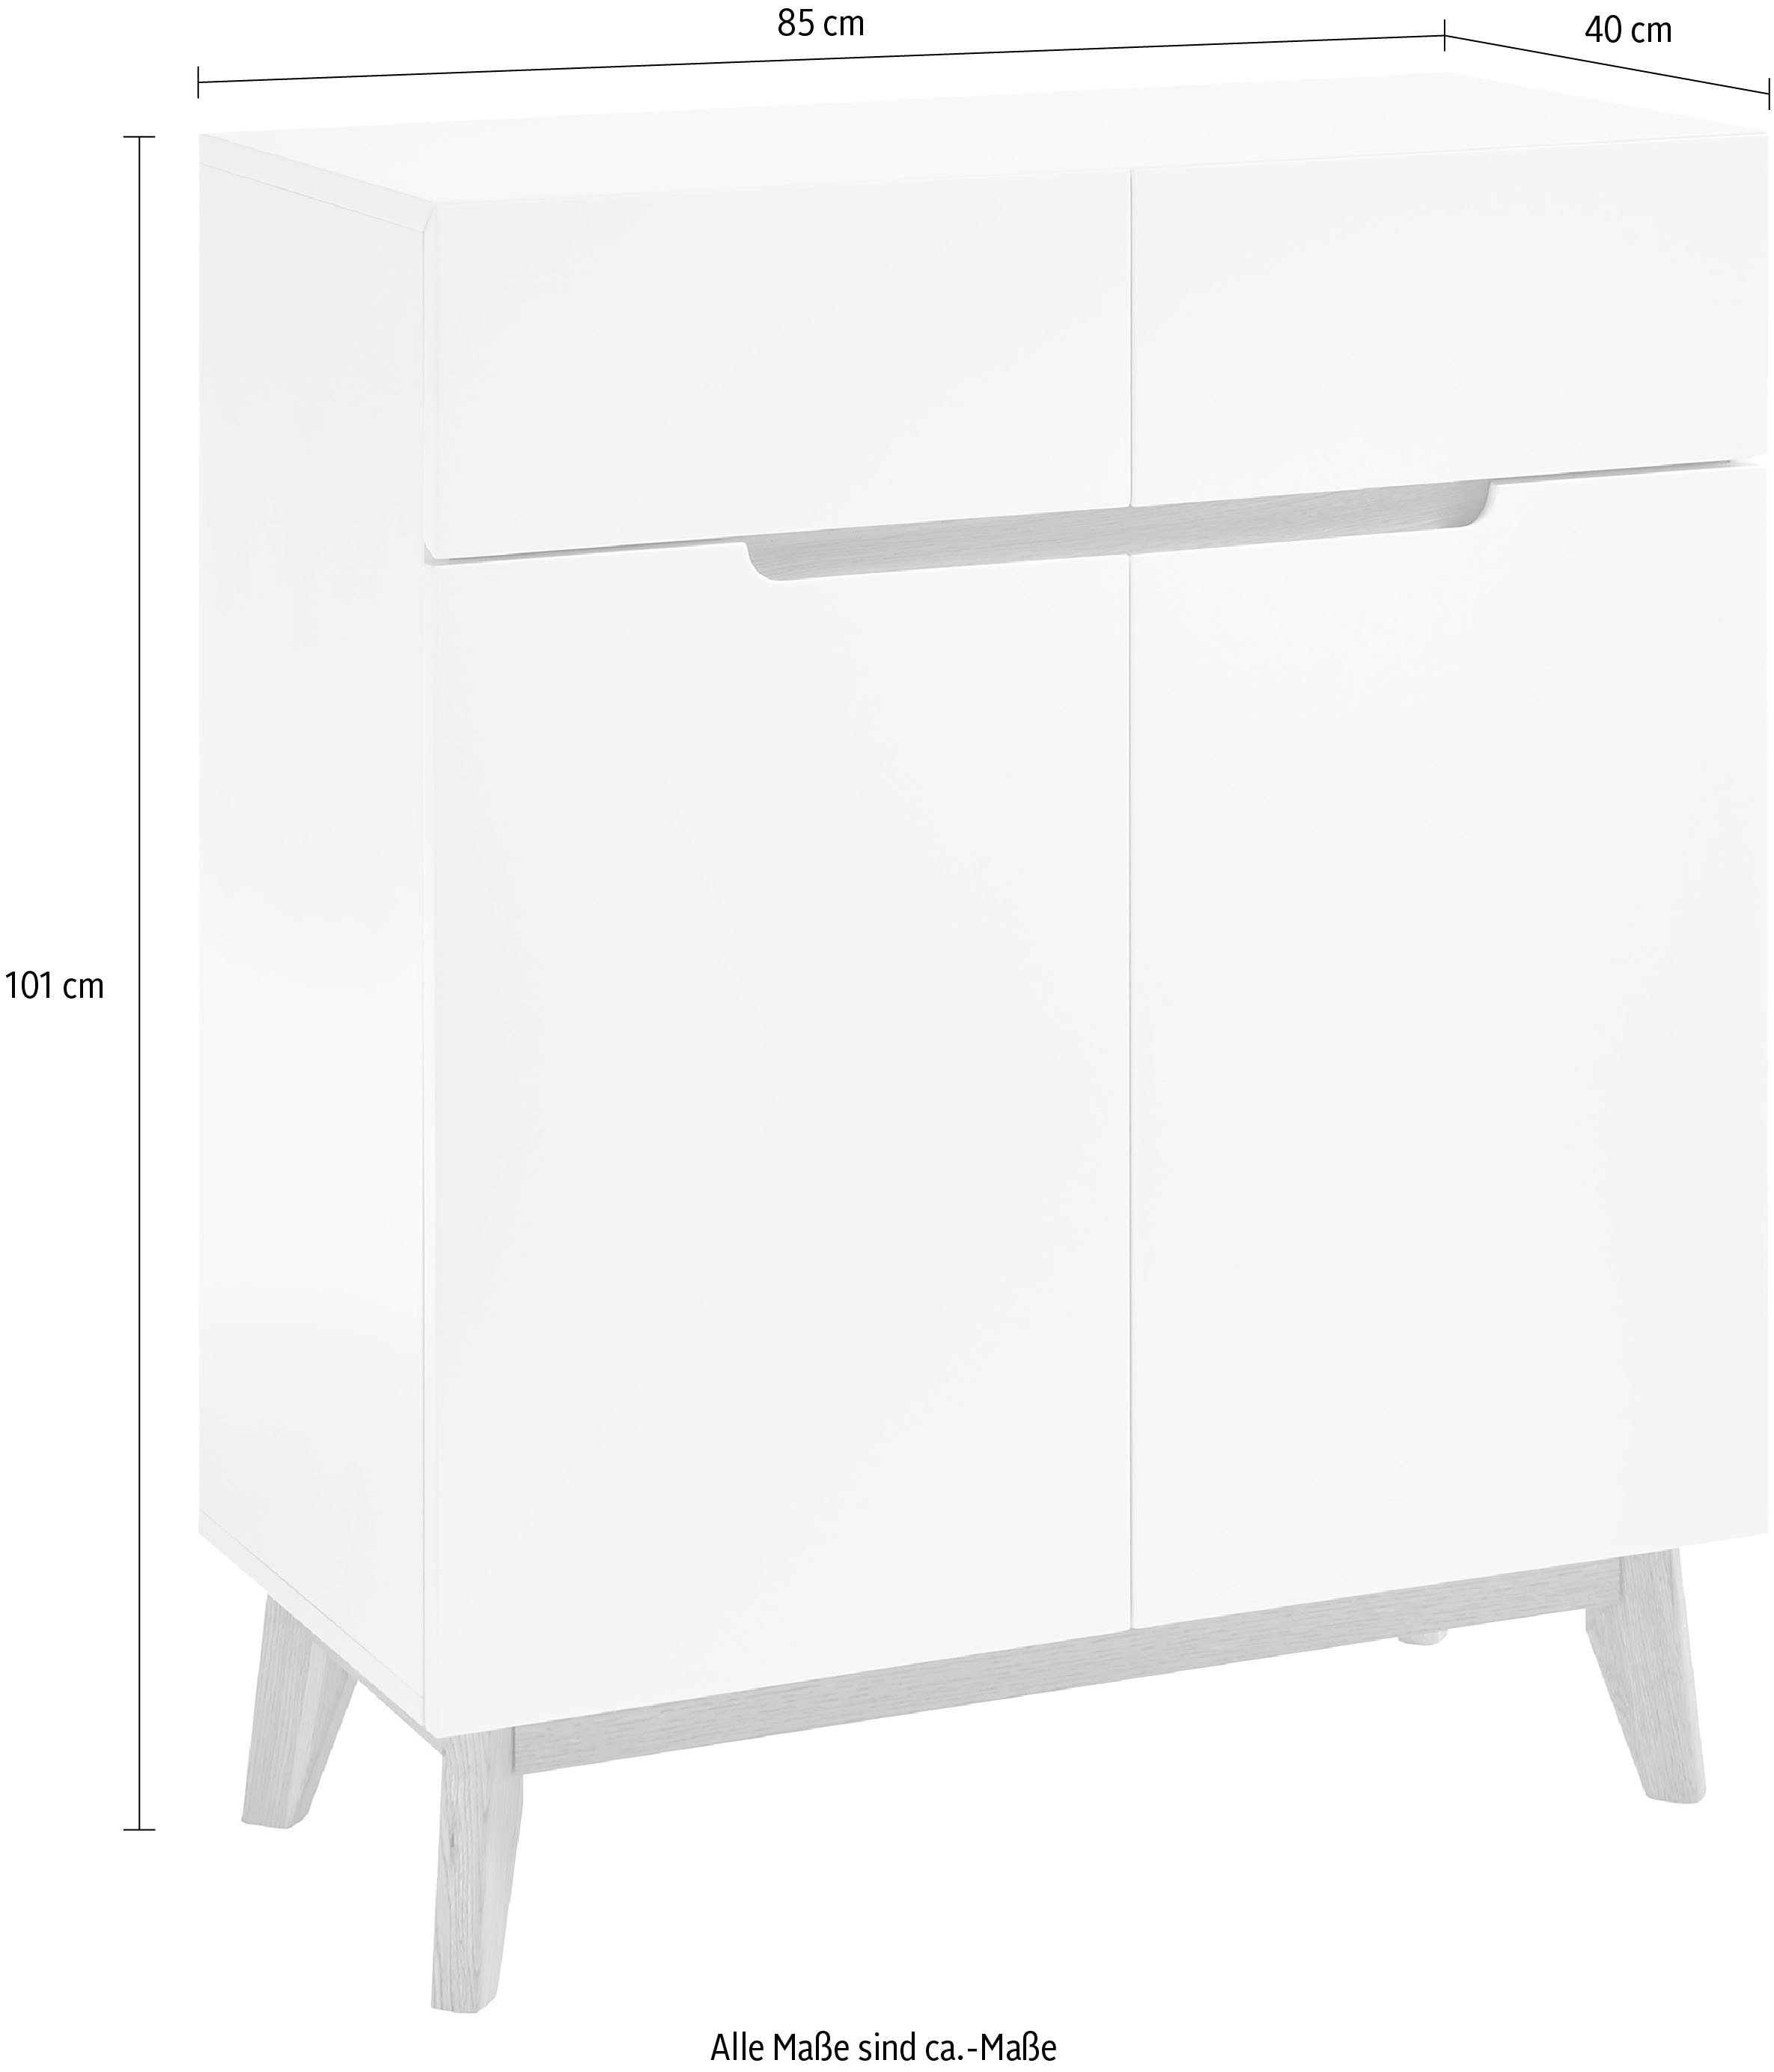 MCA furniture Garderobenschrank »Cervo«, Breite ca. 85 cm günstig kaufen